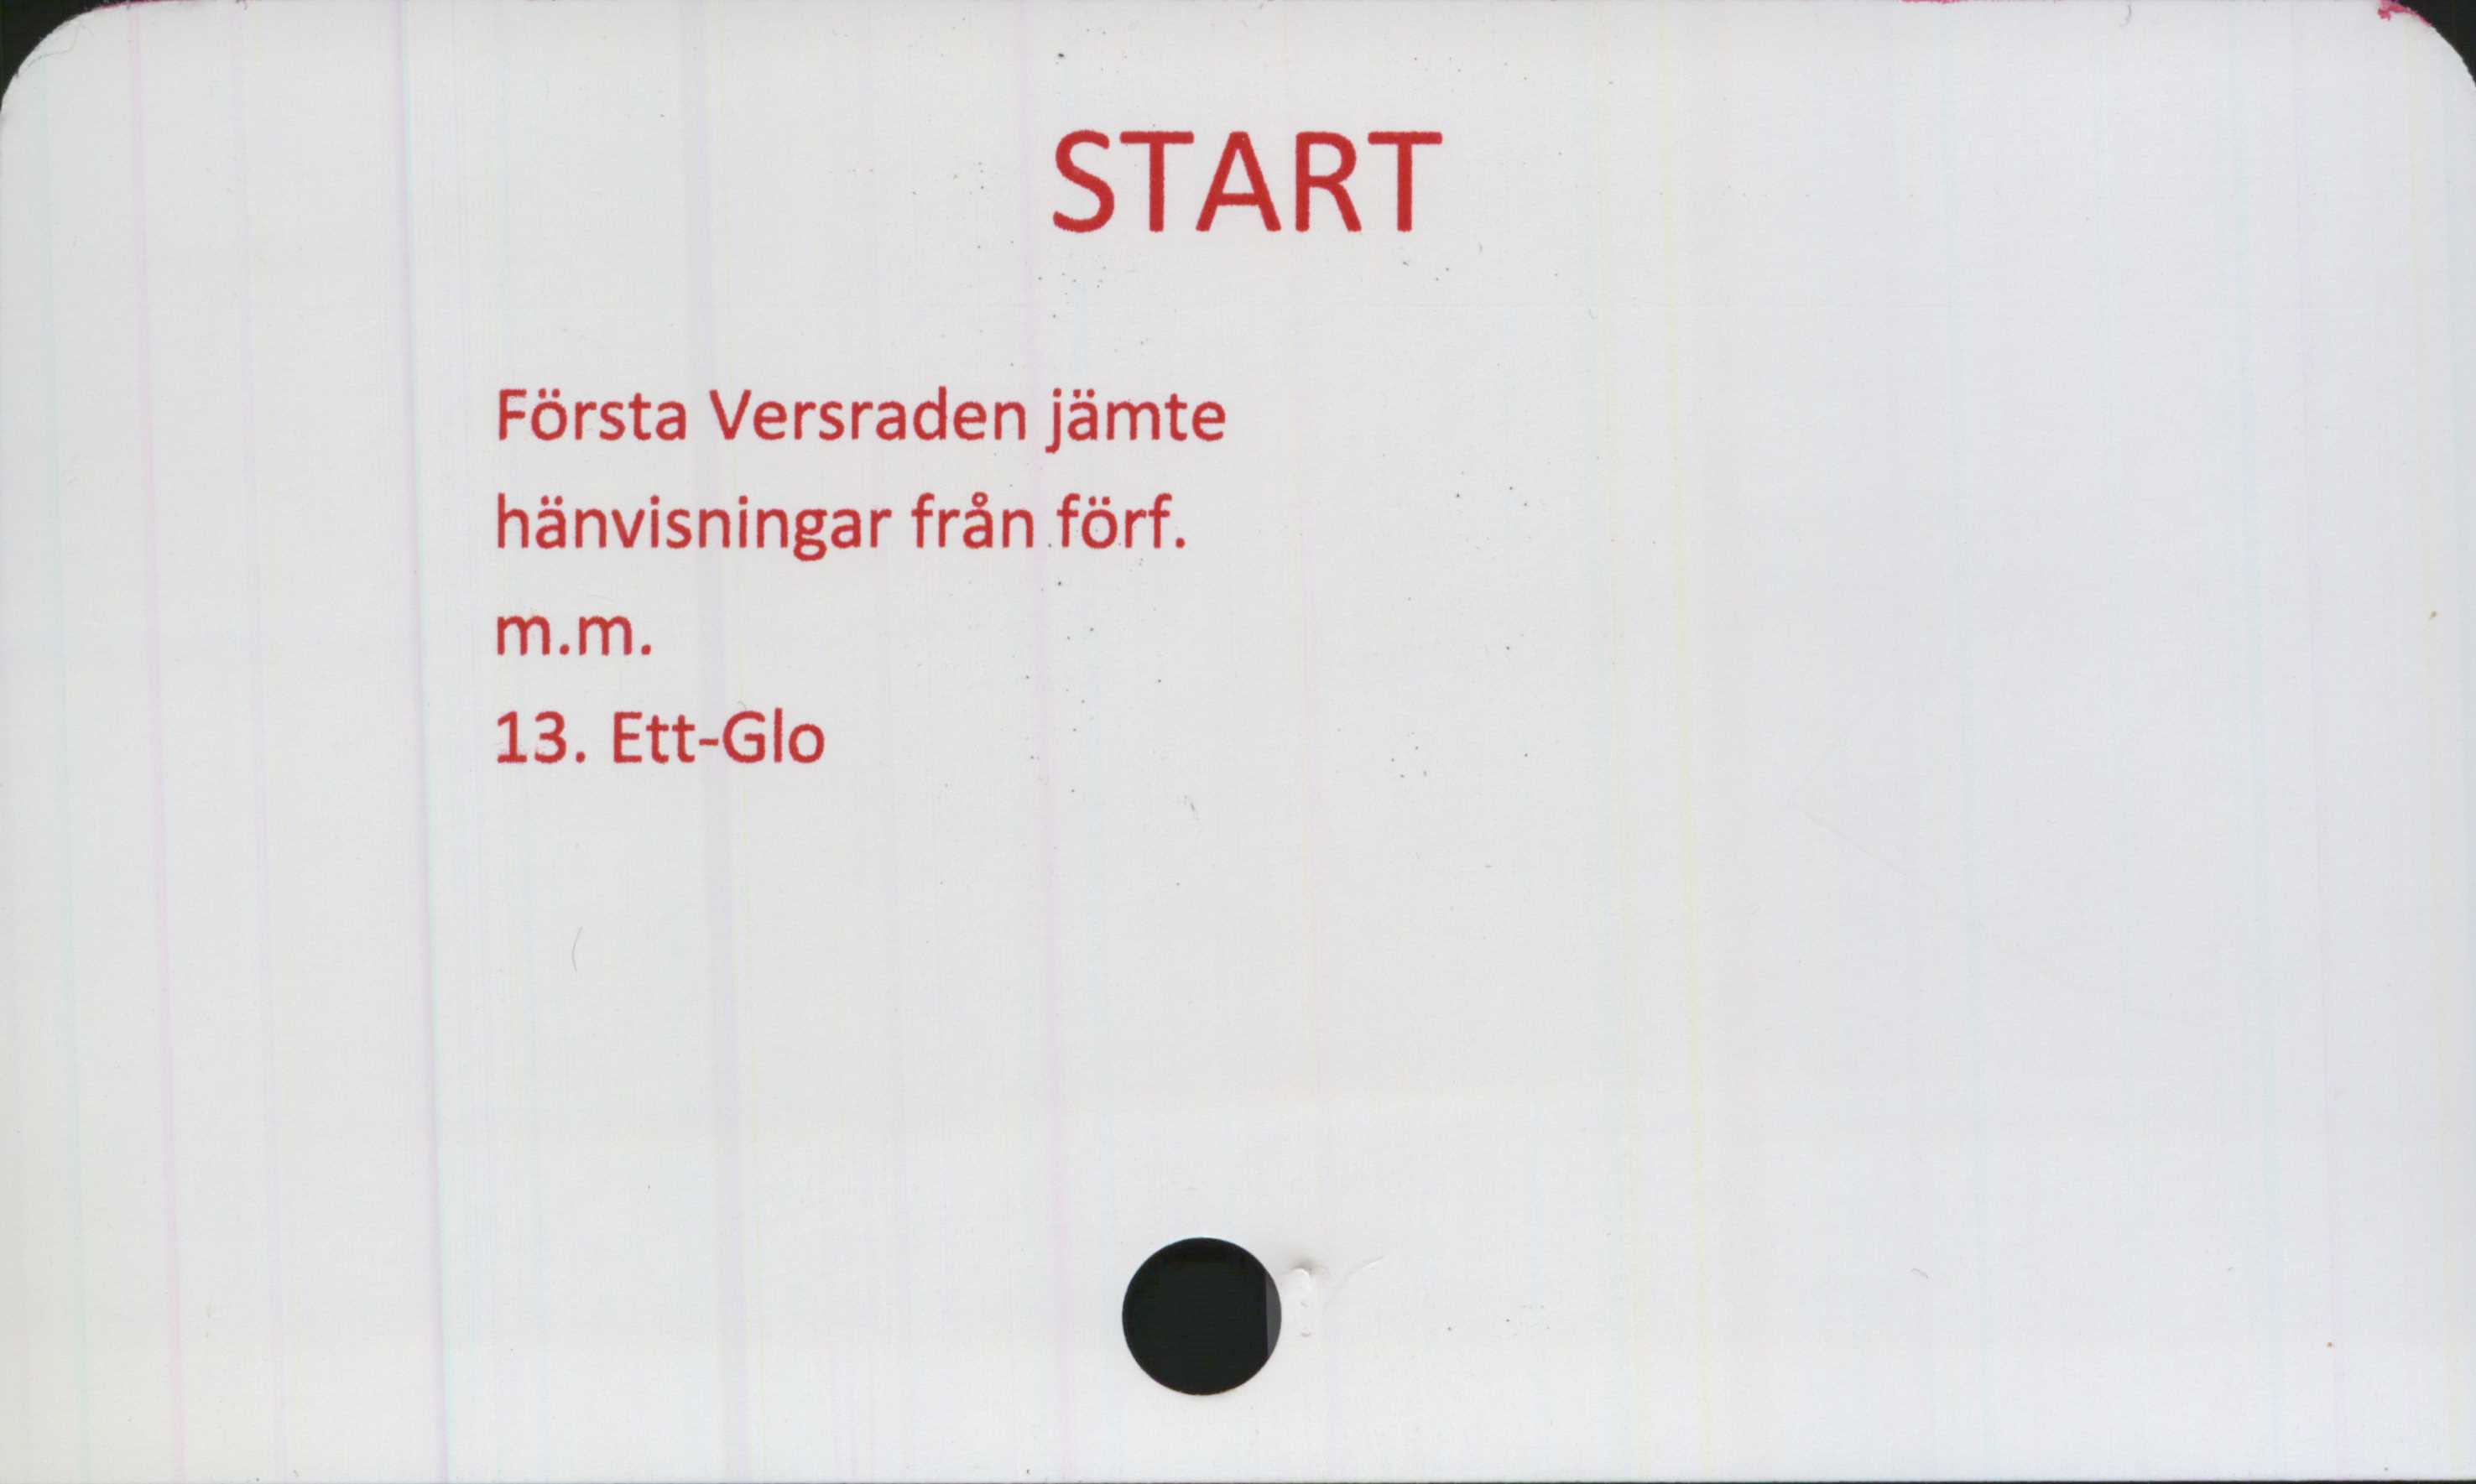  ﻿START

Första Versraden jämte
hänvisningar från förf.

m.m.

13. Ett-Glo

